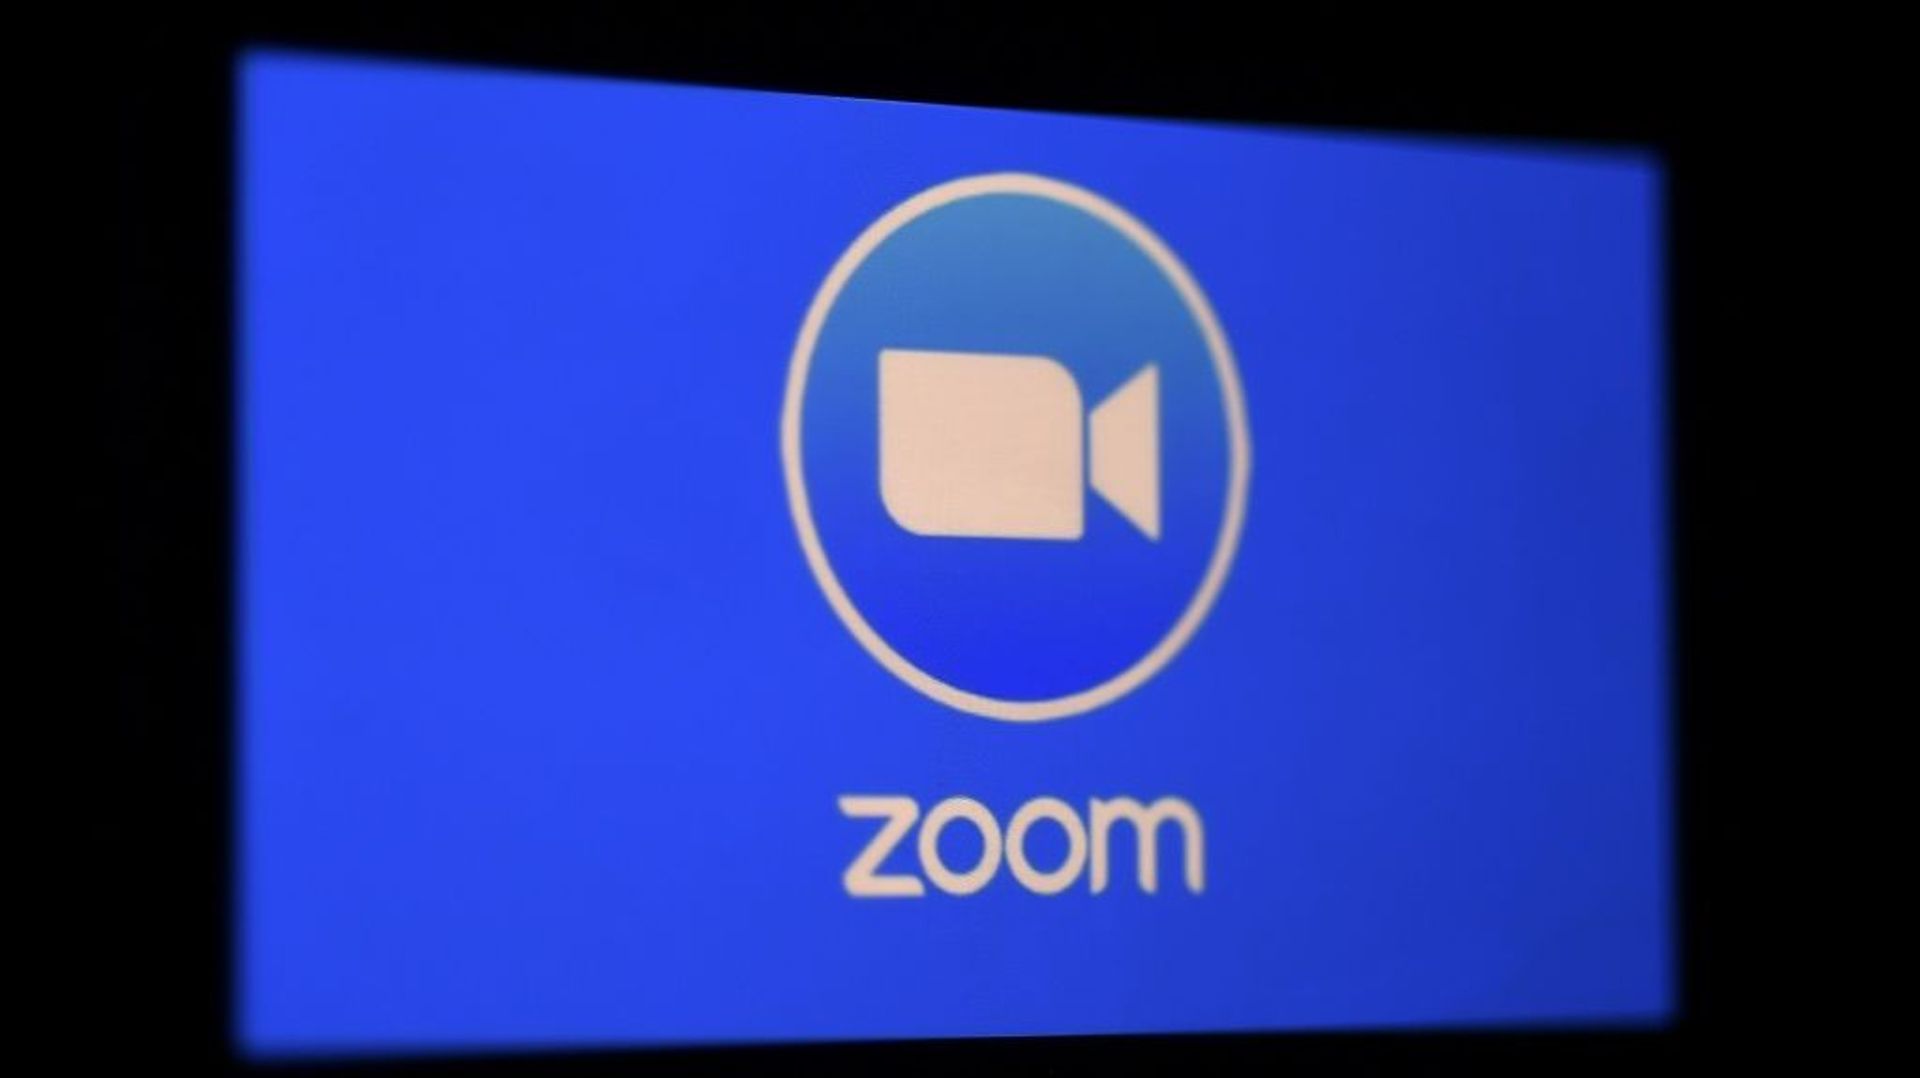 Le nombre de téléchargements de l'application Zoom ont explosé ces dernières semaines